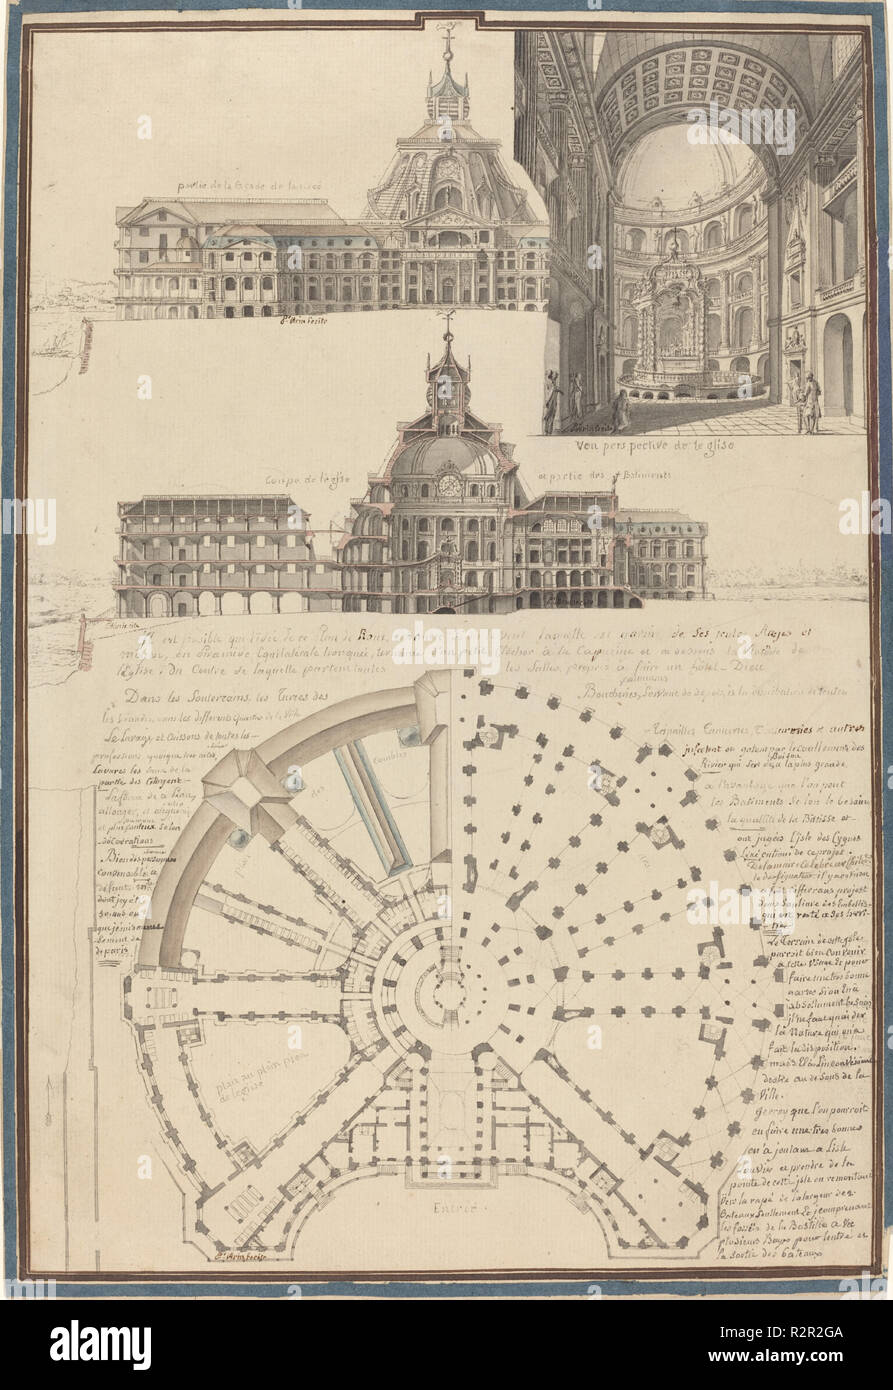 Plan y tres vistas de una circular en la Iglesia. Fecha: c. 1750.  Dimensiones: total: 36,5 x 24,8 cm (14 3/8 x 9 3/4 in.). Medio: lápiz y  tinta negra y gris